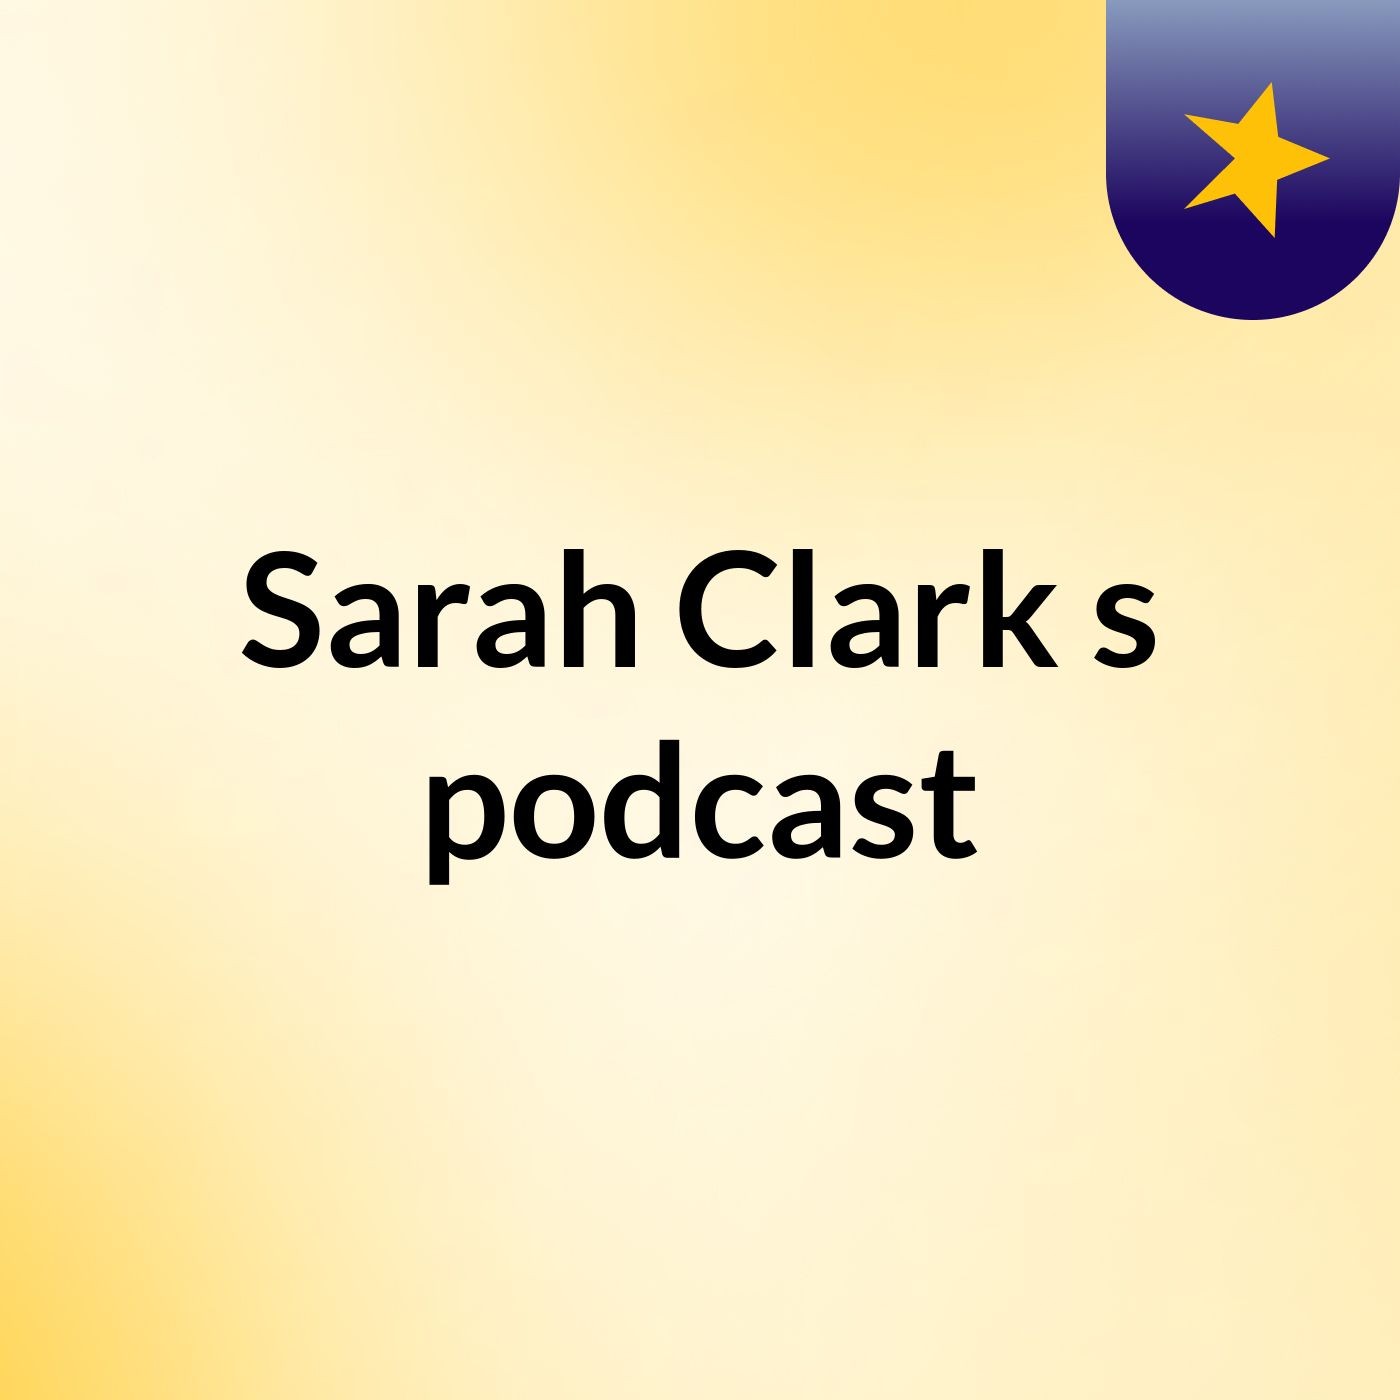 Sarah Clark's podcast